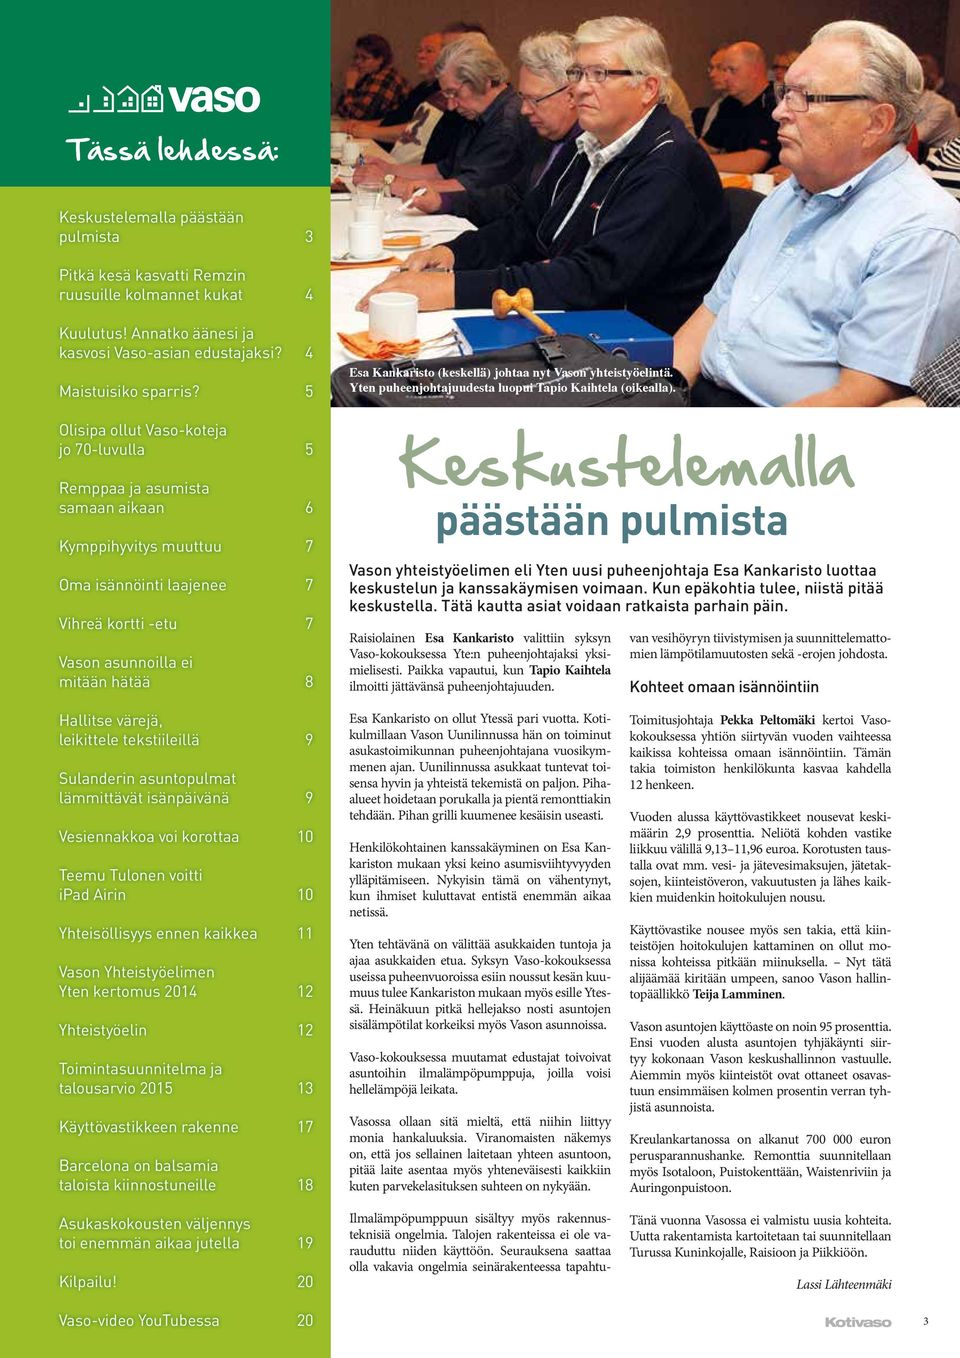 Kankaristo (keskellä) johtaa nyt Vason yhteistyöelintä. Yten puheenjohtajuudesta luopui Tapio Kaihtela (oikealla).